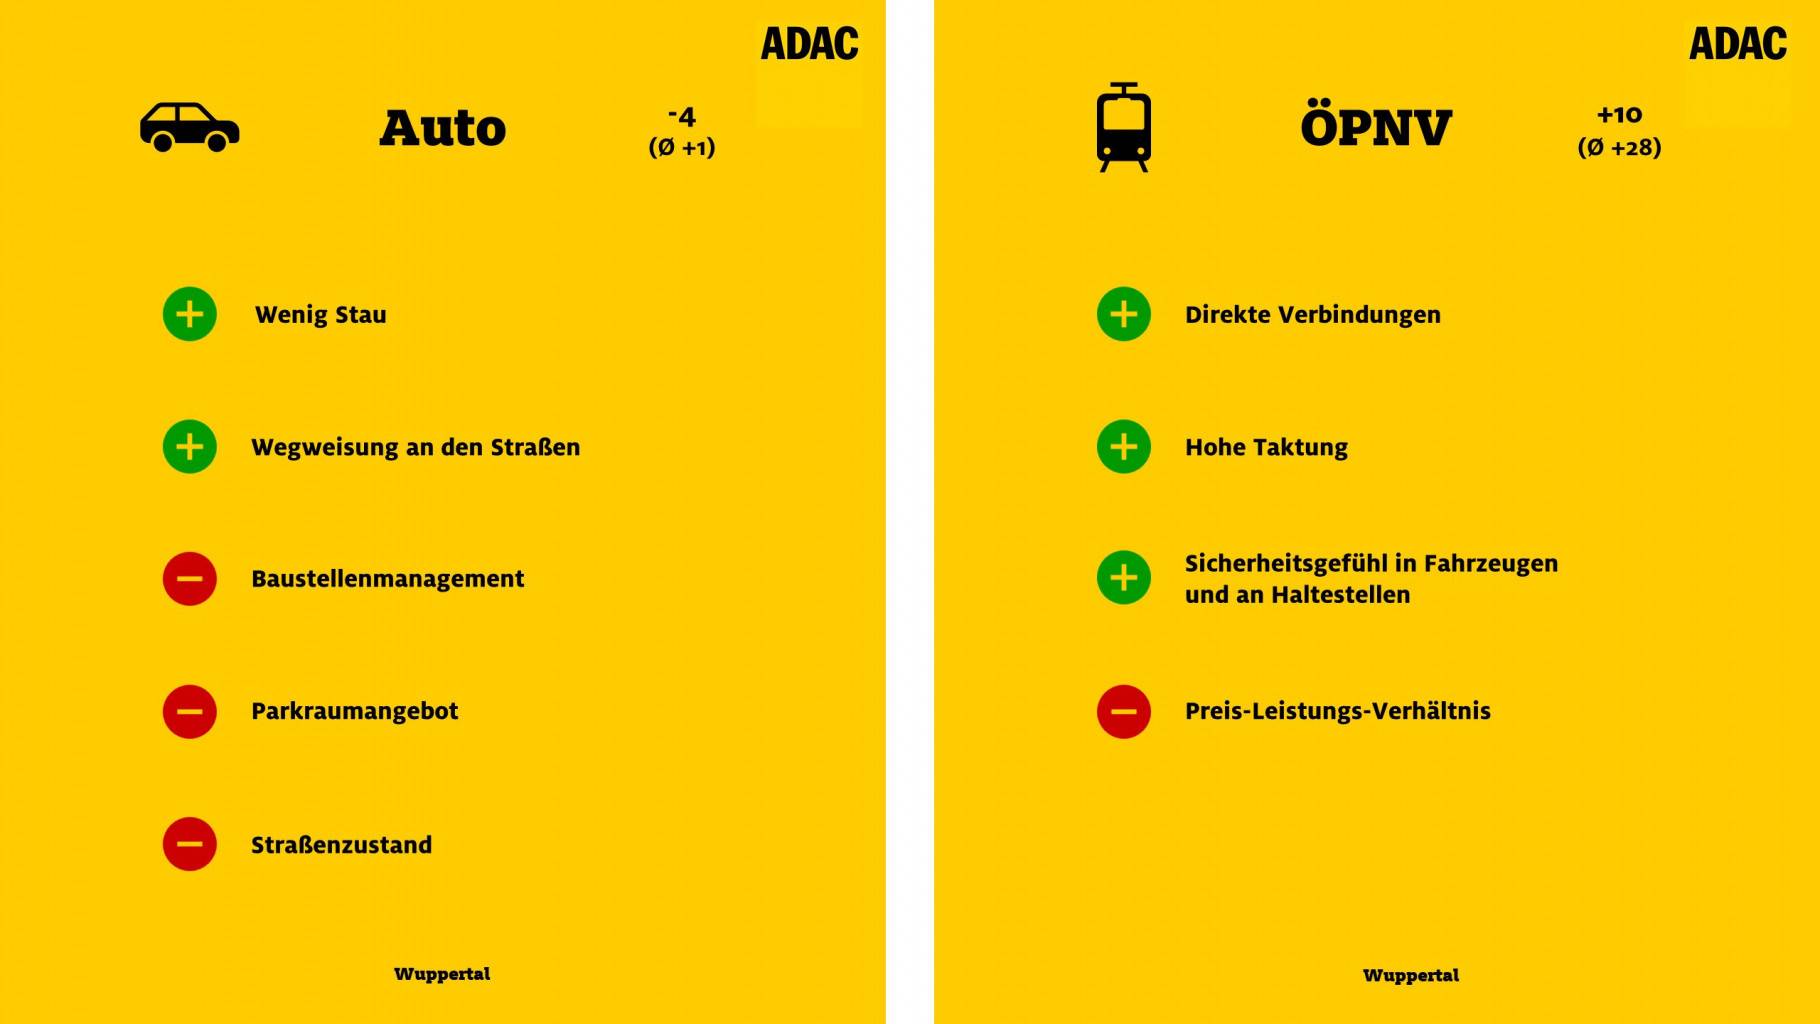 ADAC-Studie „Mobil in der Stadt“: Schlechte Werte für Wuppertal